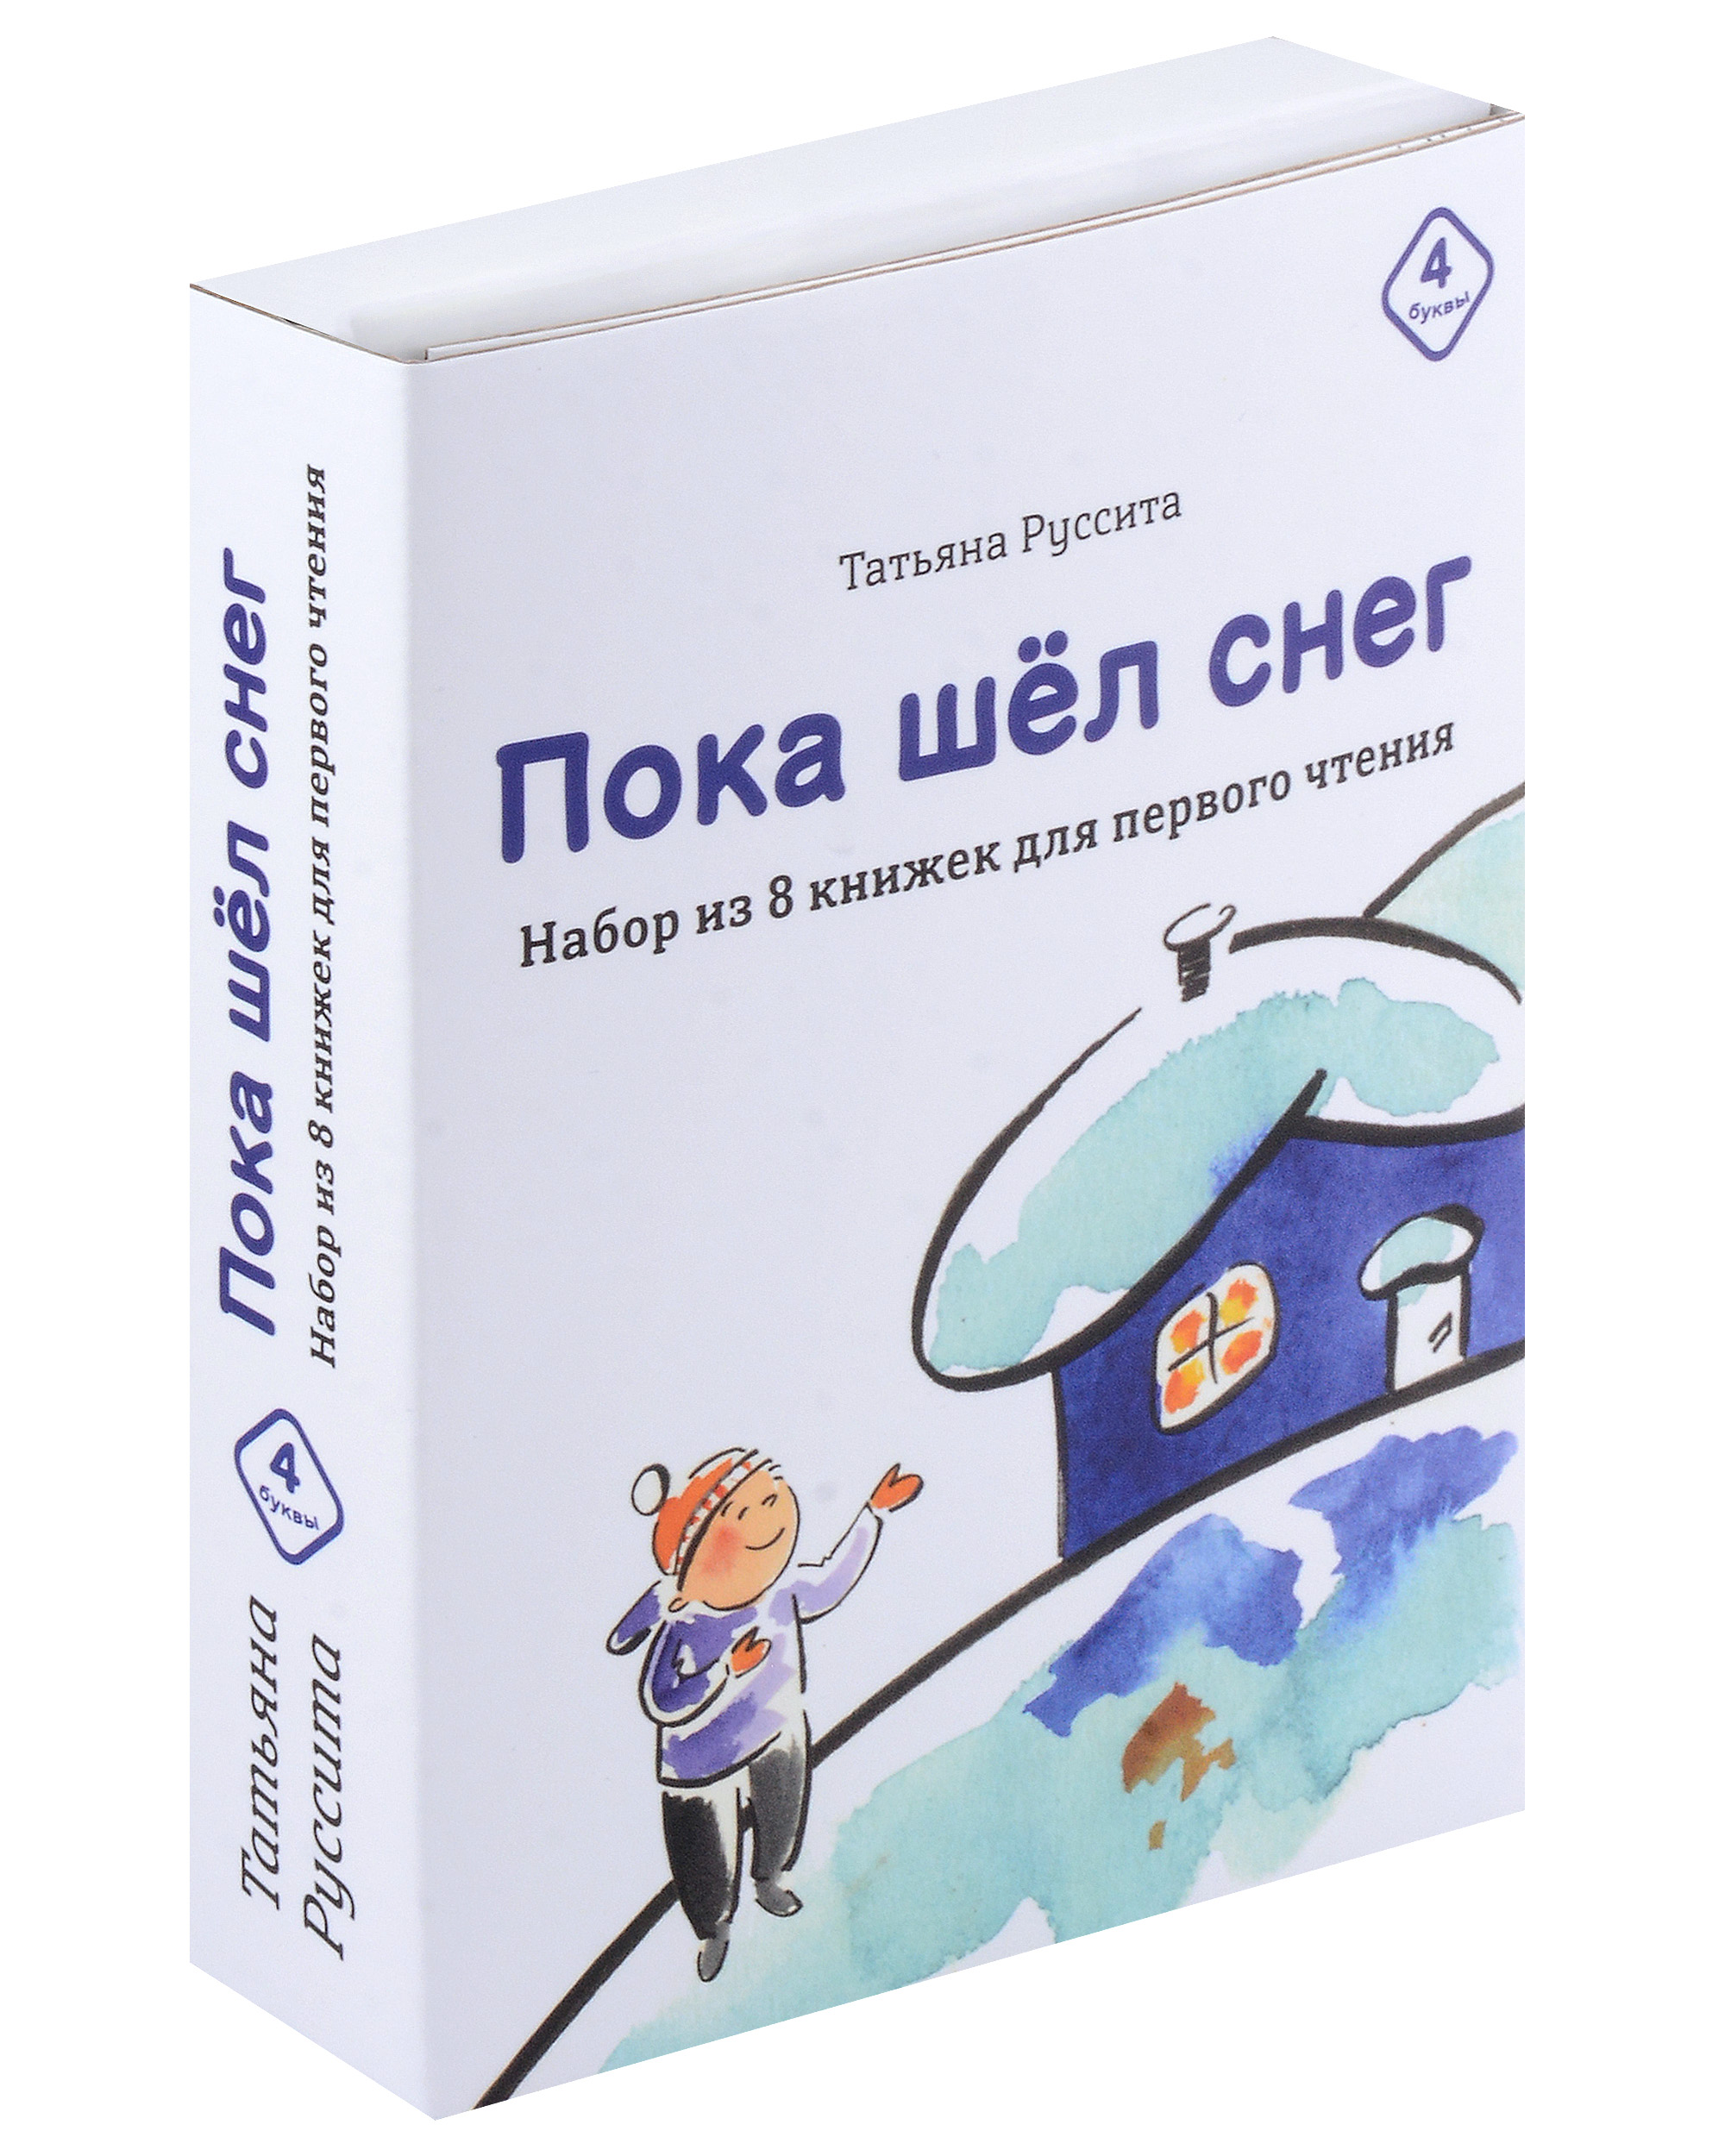 Руссита Татьяна - Набор из 8 книг для первого чтения "Пока шёл снег"